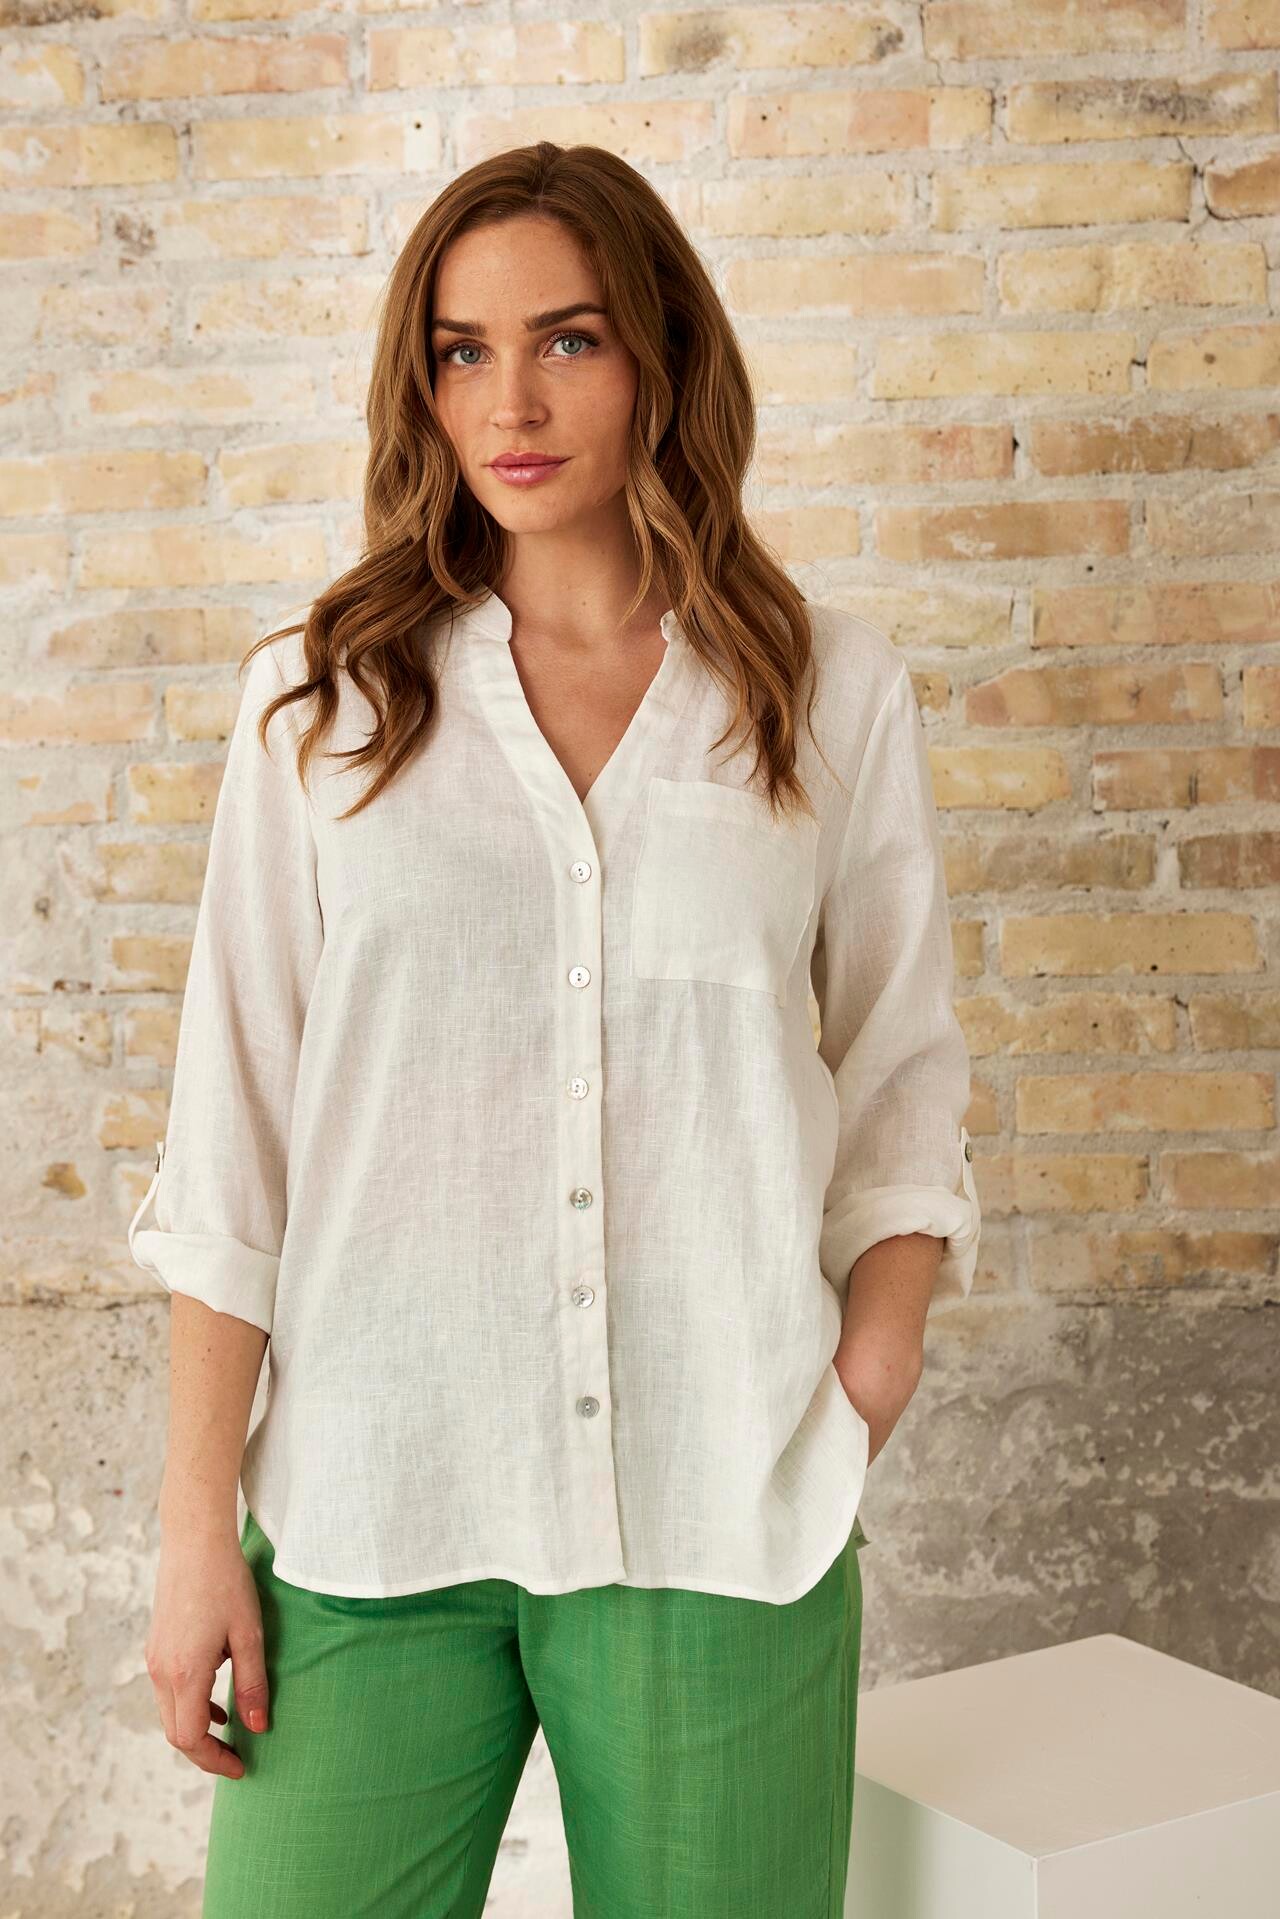 Se IN FRONT Linea Skjorte, Farve: Off White, Størrelse: M, Dame hos Infront Women